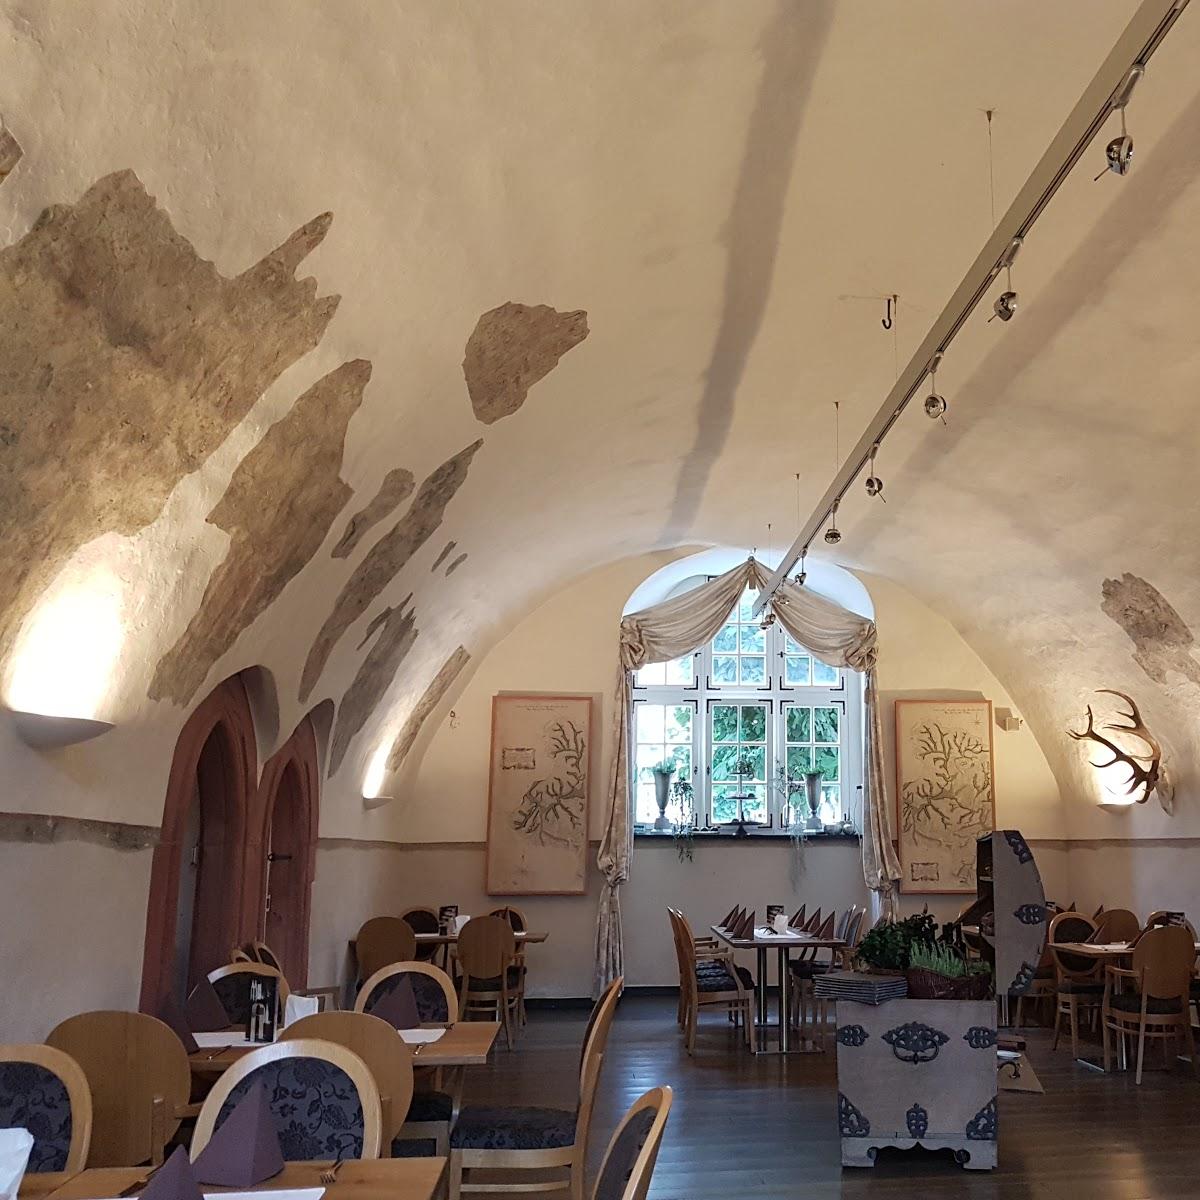 Restaurant "Schloss-Schänke" in Bad Berleburg